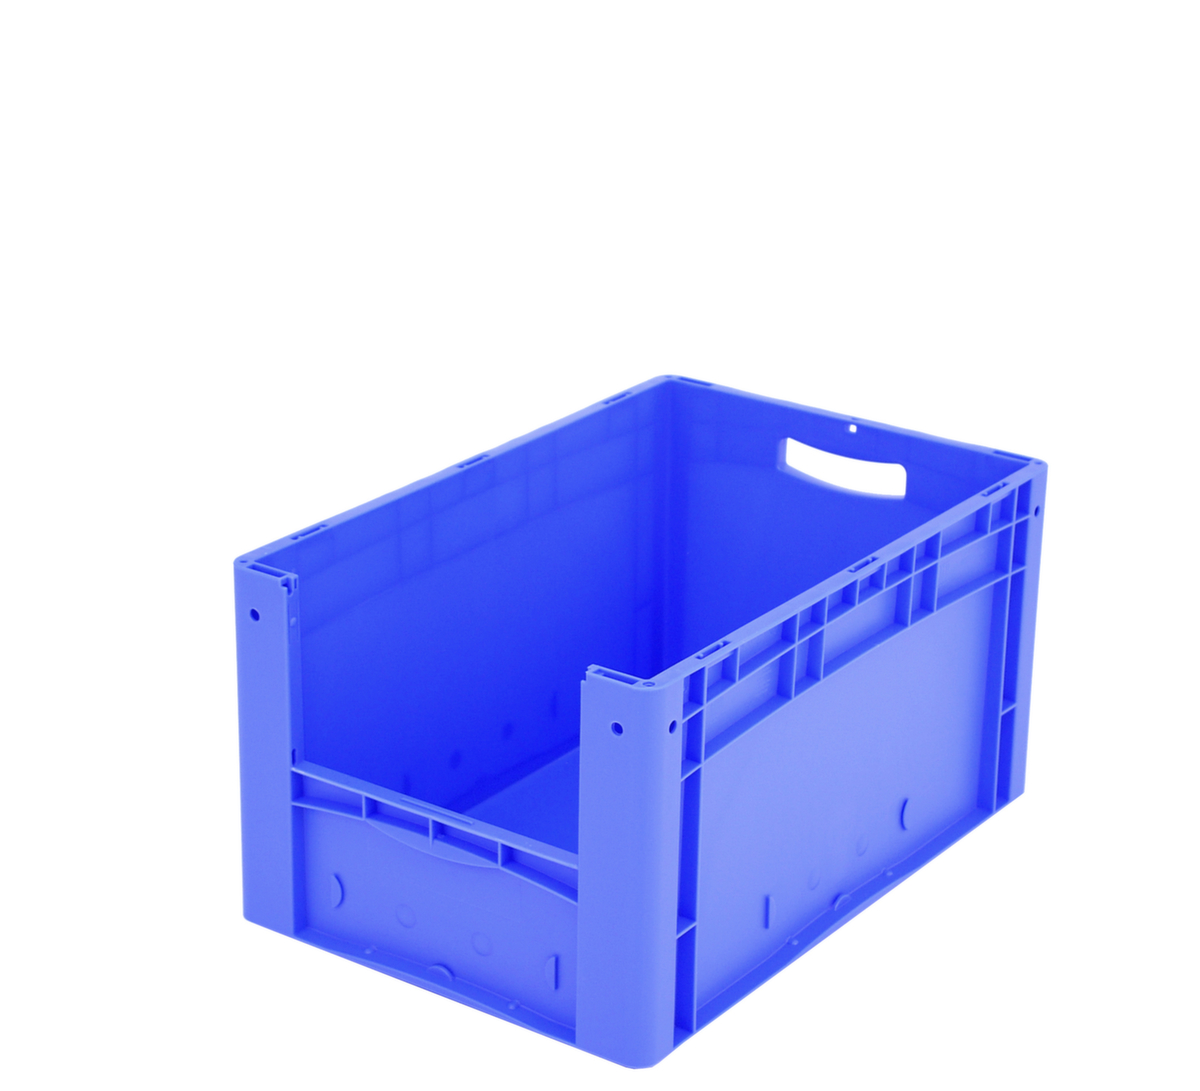 Euronorm-Sichtlagerbehälter mit Eingrifföffnung, blau, HxLxB 320x600x400 mm